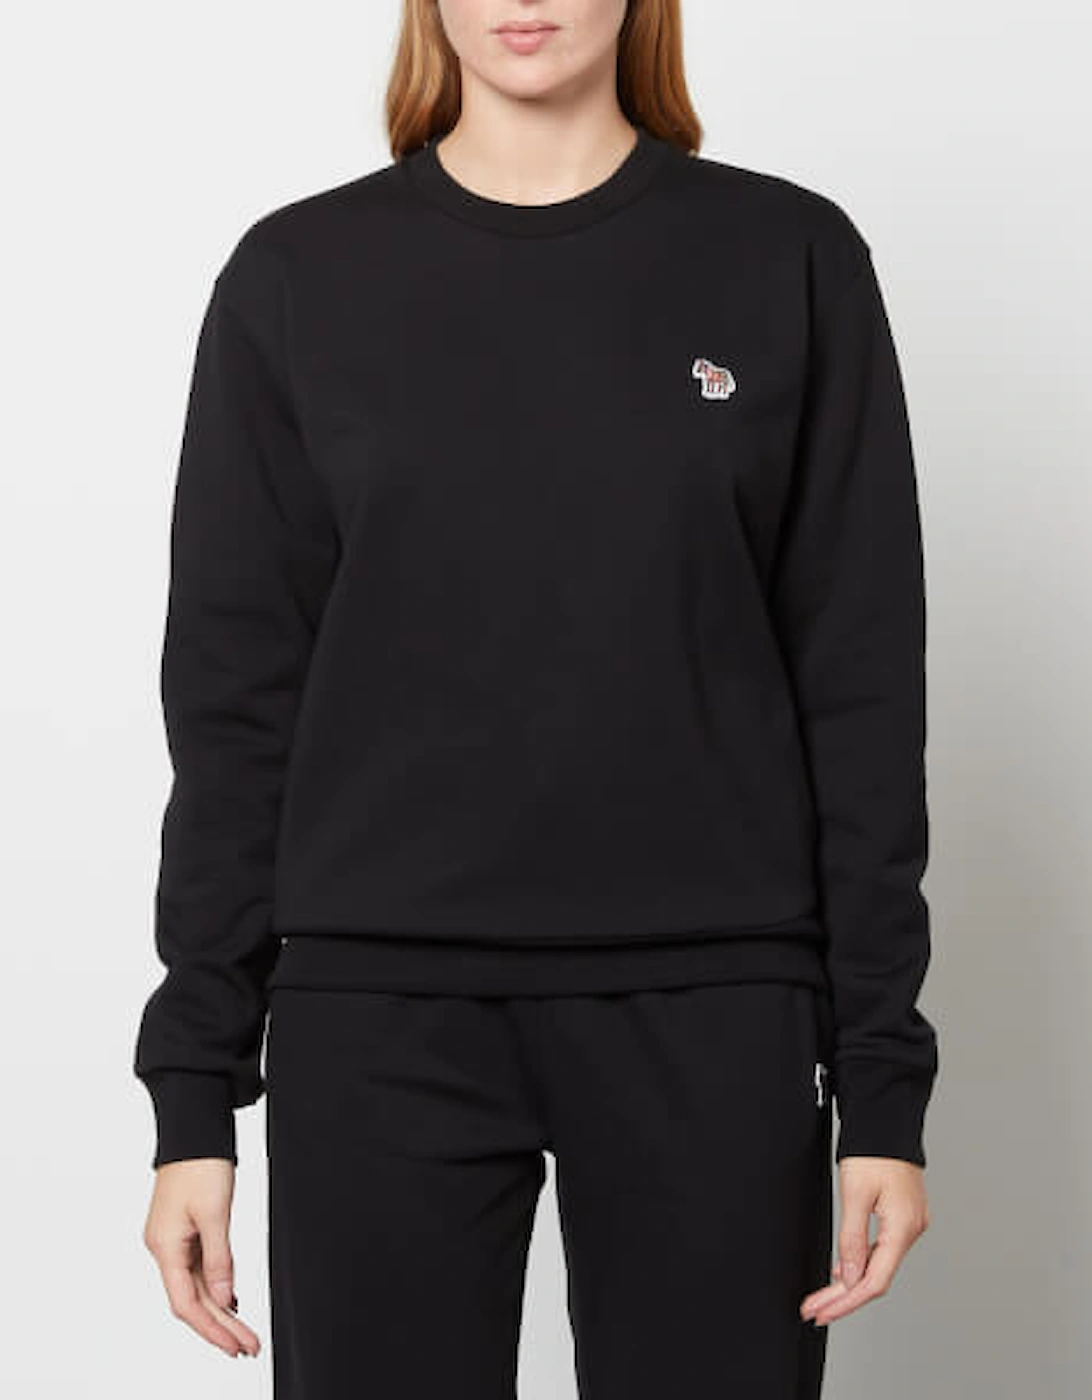 PS Women's Zebra Sweatshirt - Black, 2 of 1